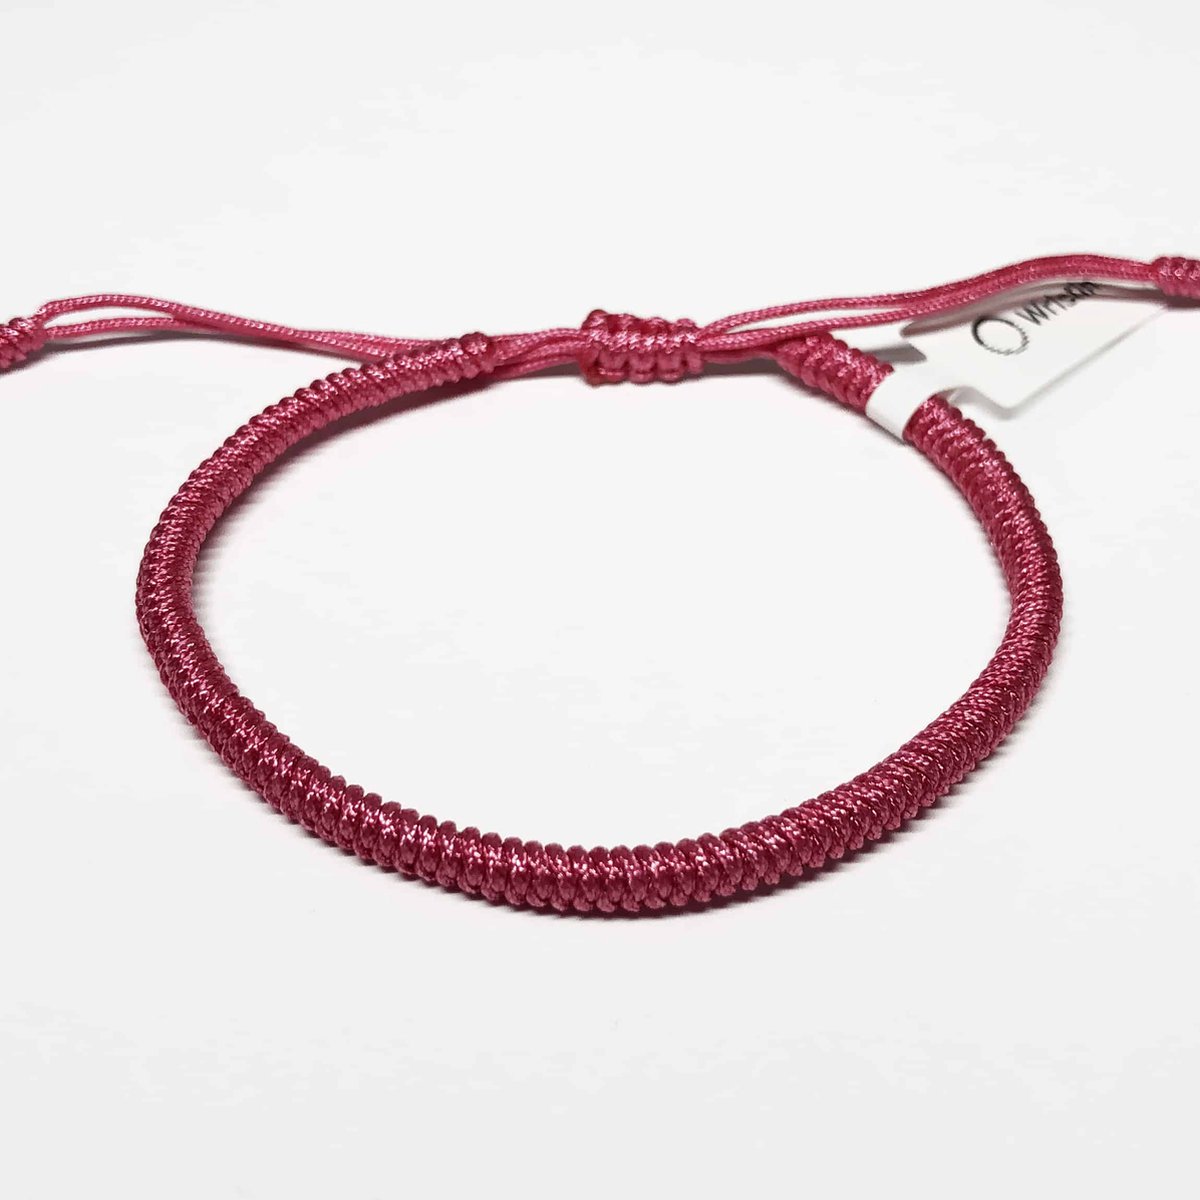 Wristin - Tibetaanse armband eenvoudig roze